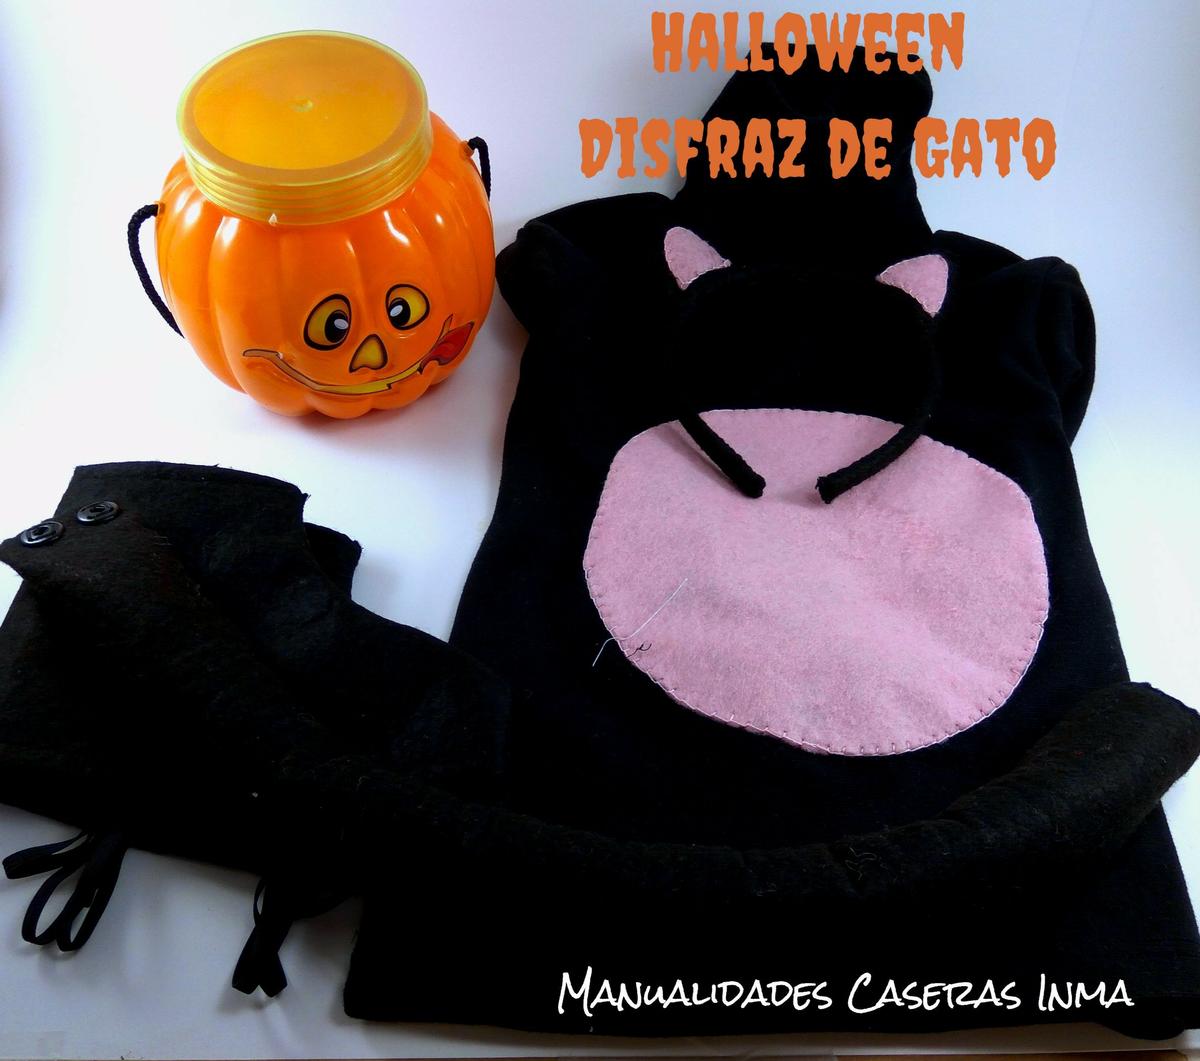 Manualidades Caseras Inma_ Halloween_Disfraz de Gato Negro 